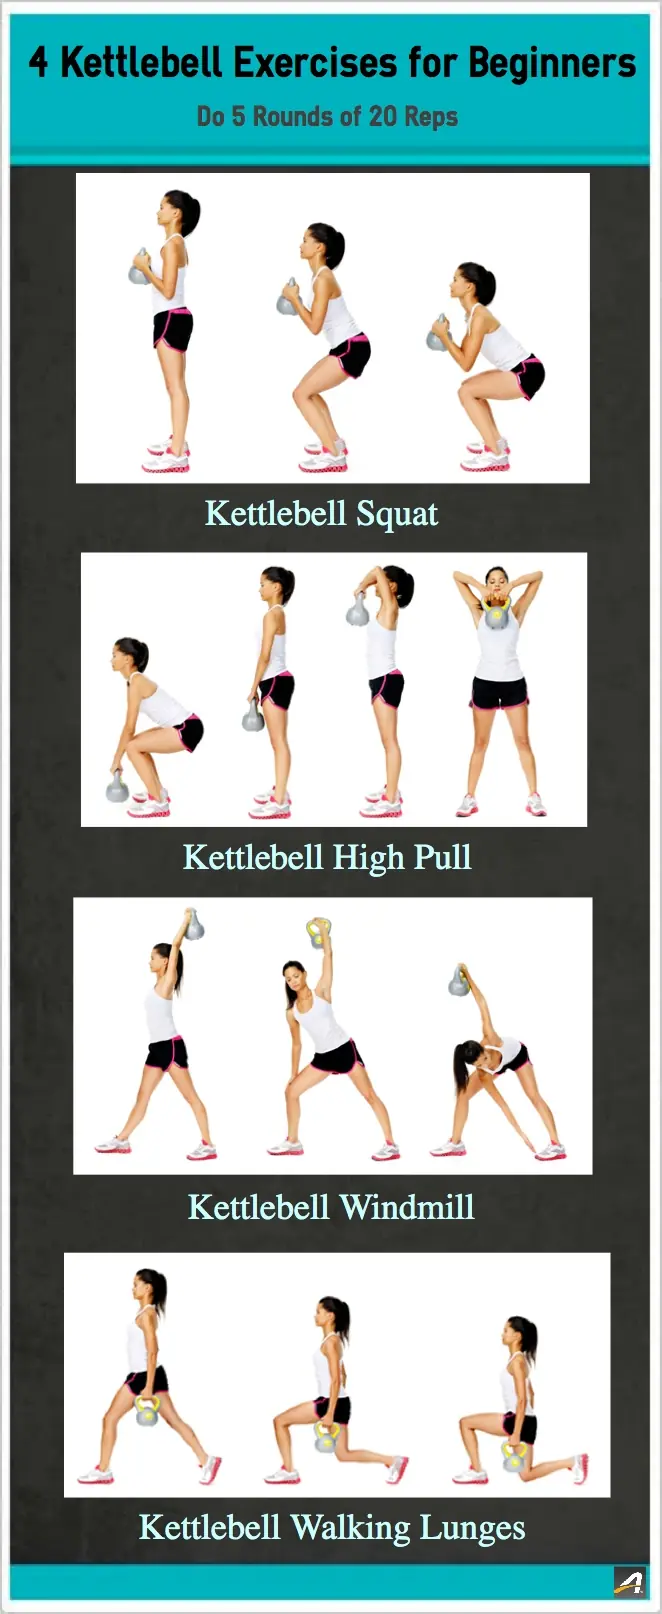 http://www.active.com/Assets/Fitness/4-Kettlebell-Exercises-for-Beginners-Inforgraphic.jpg